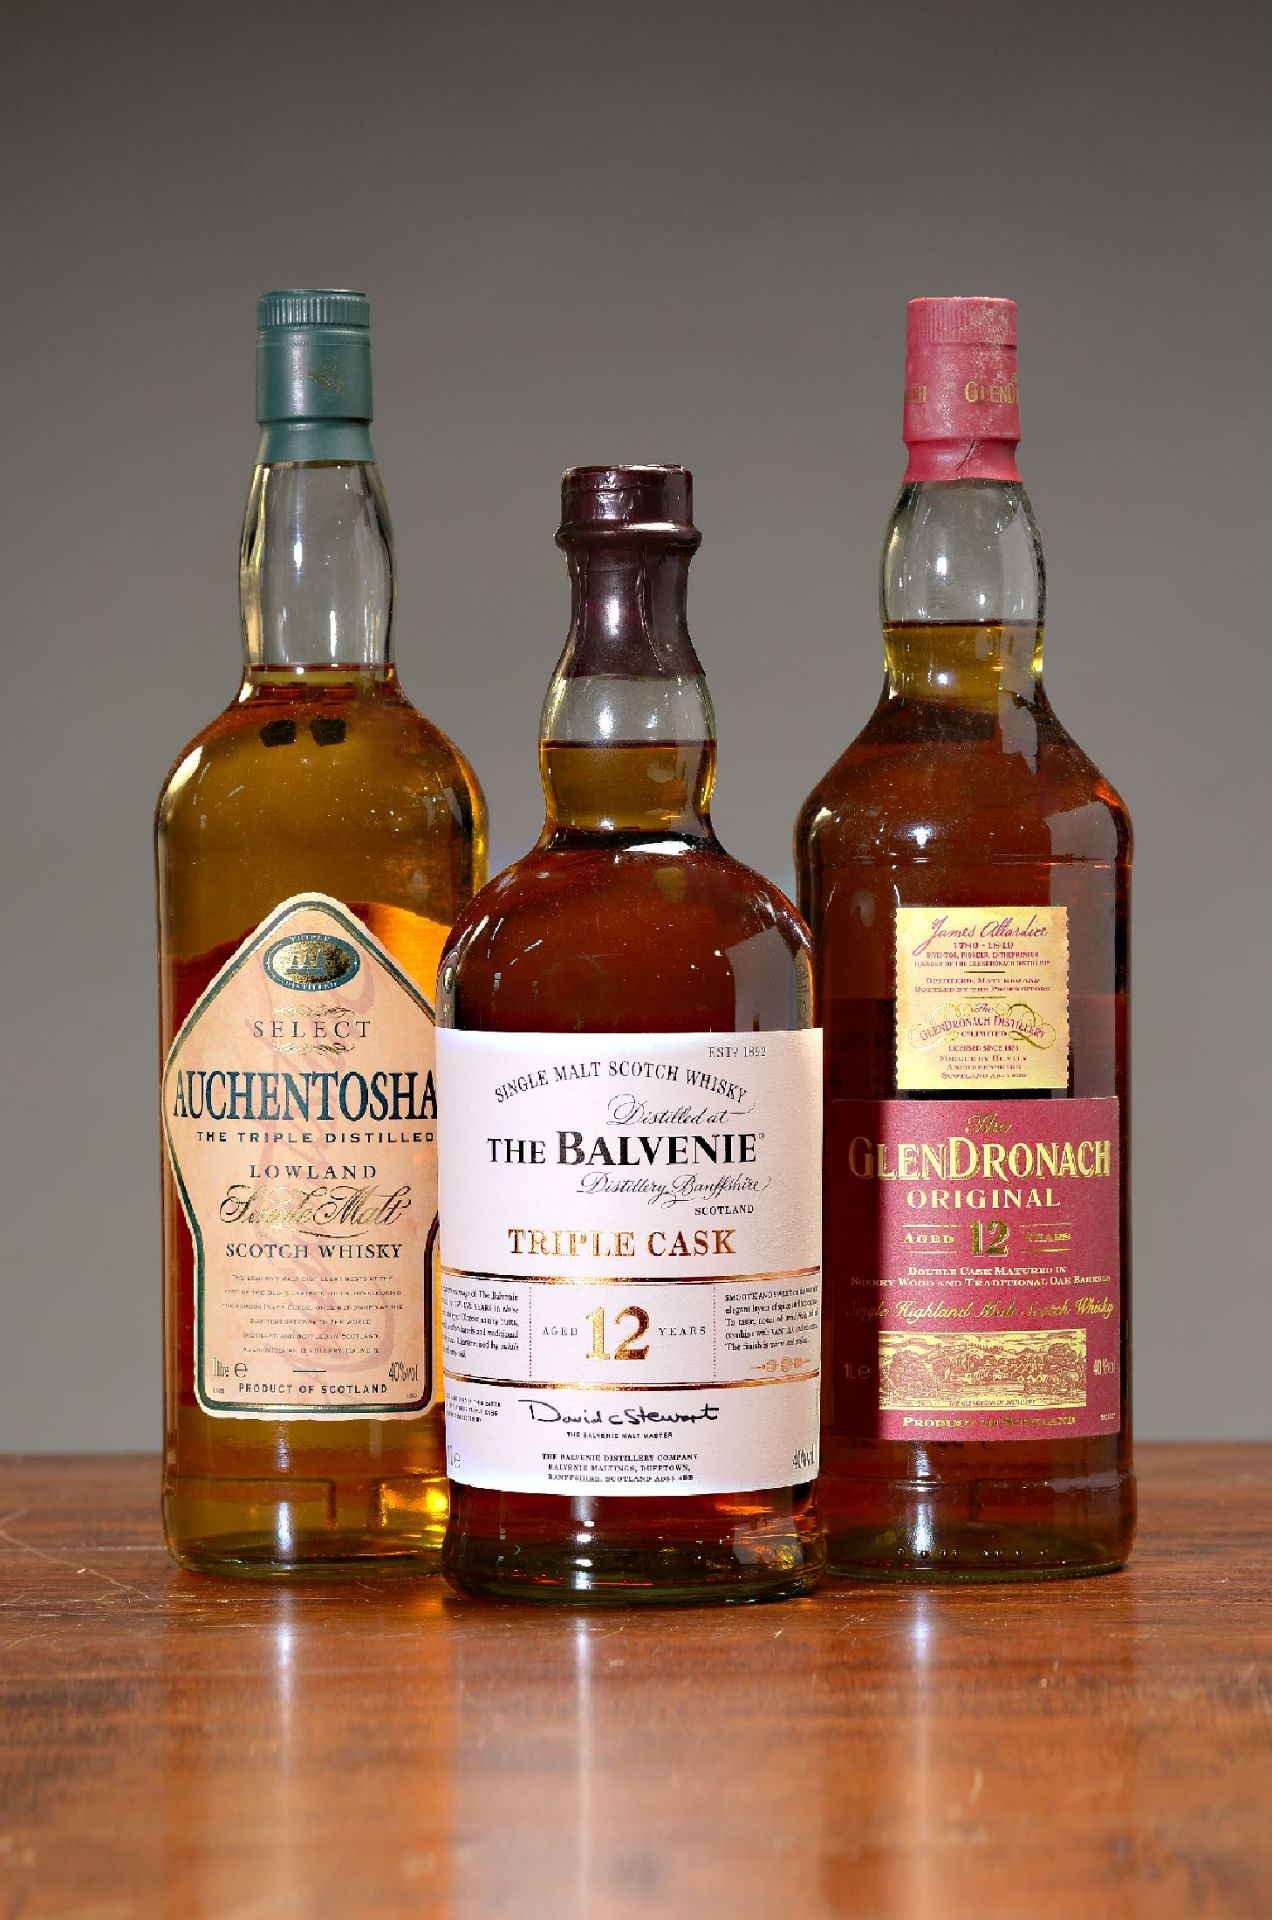 3 Flaschen schottische single malt Whiskys, 1x